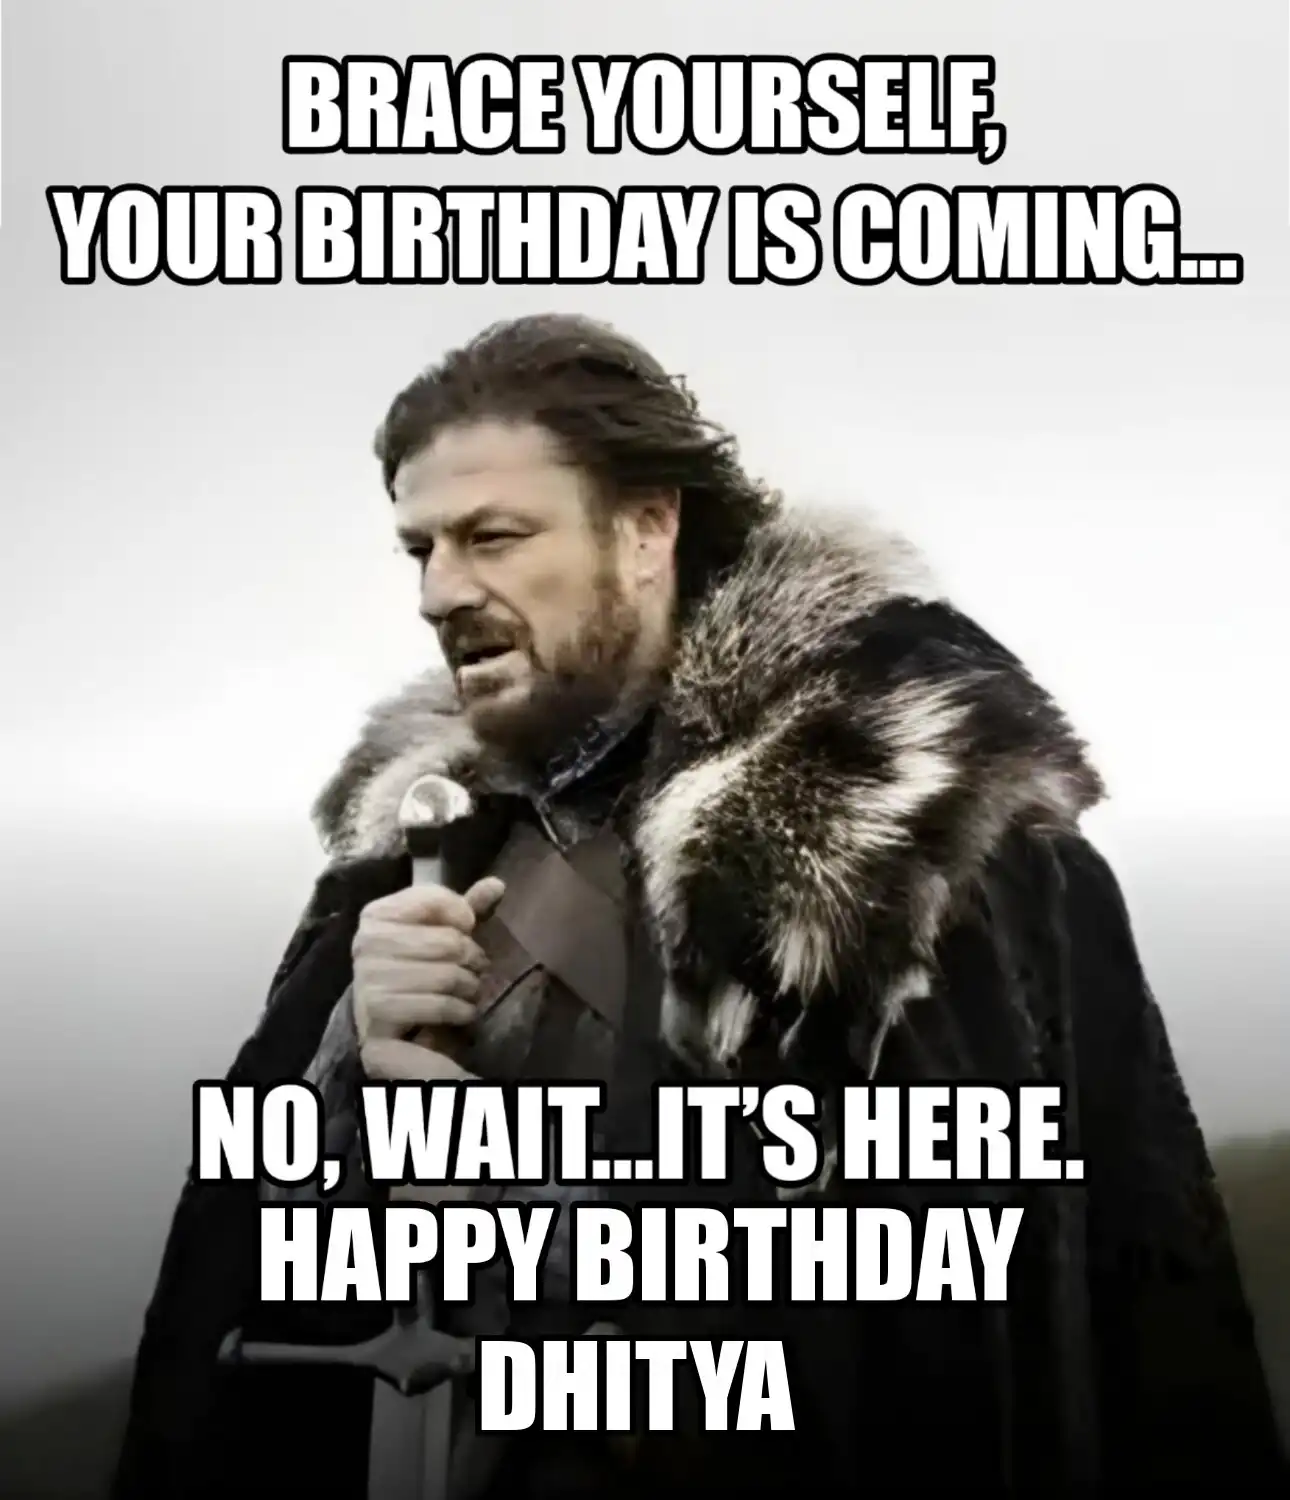 Happy Birthday Dhitya Brace Yourself Your Birthday Is Coming Meme